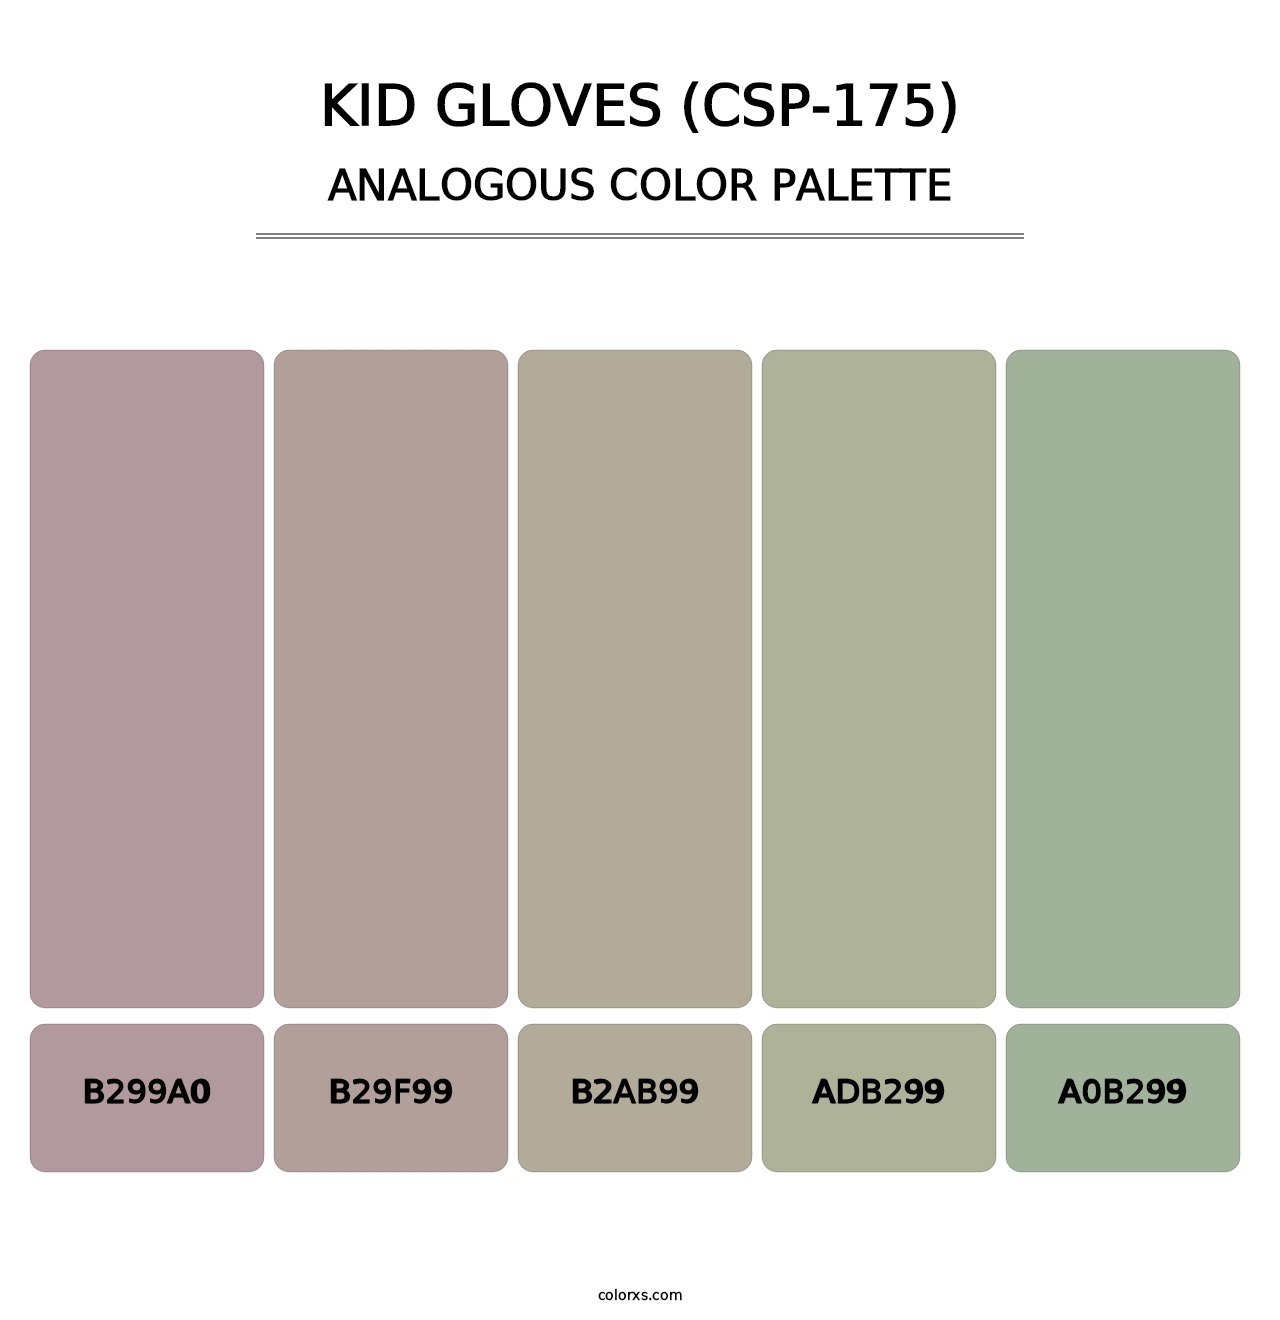 Kid Gloves (CSP-175) - Analogous Color Palette